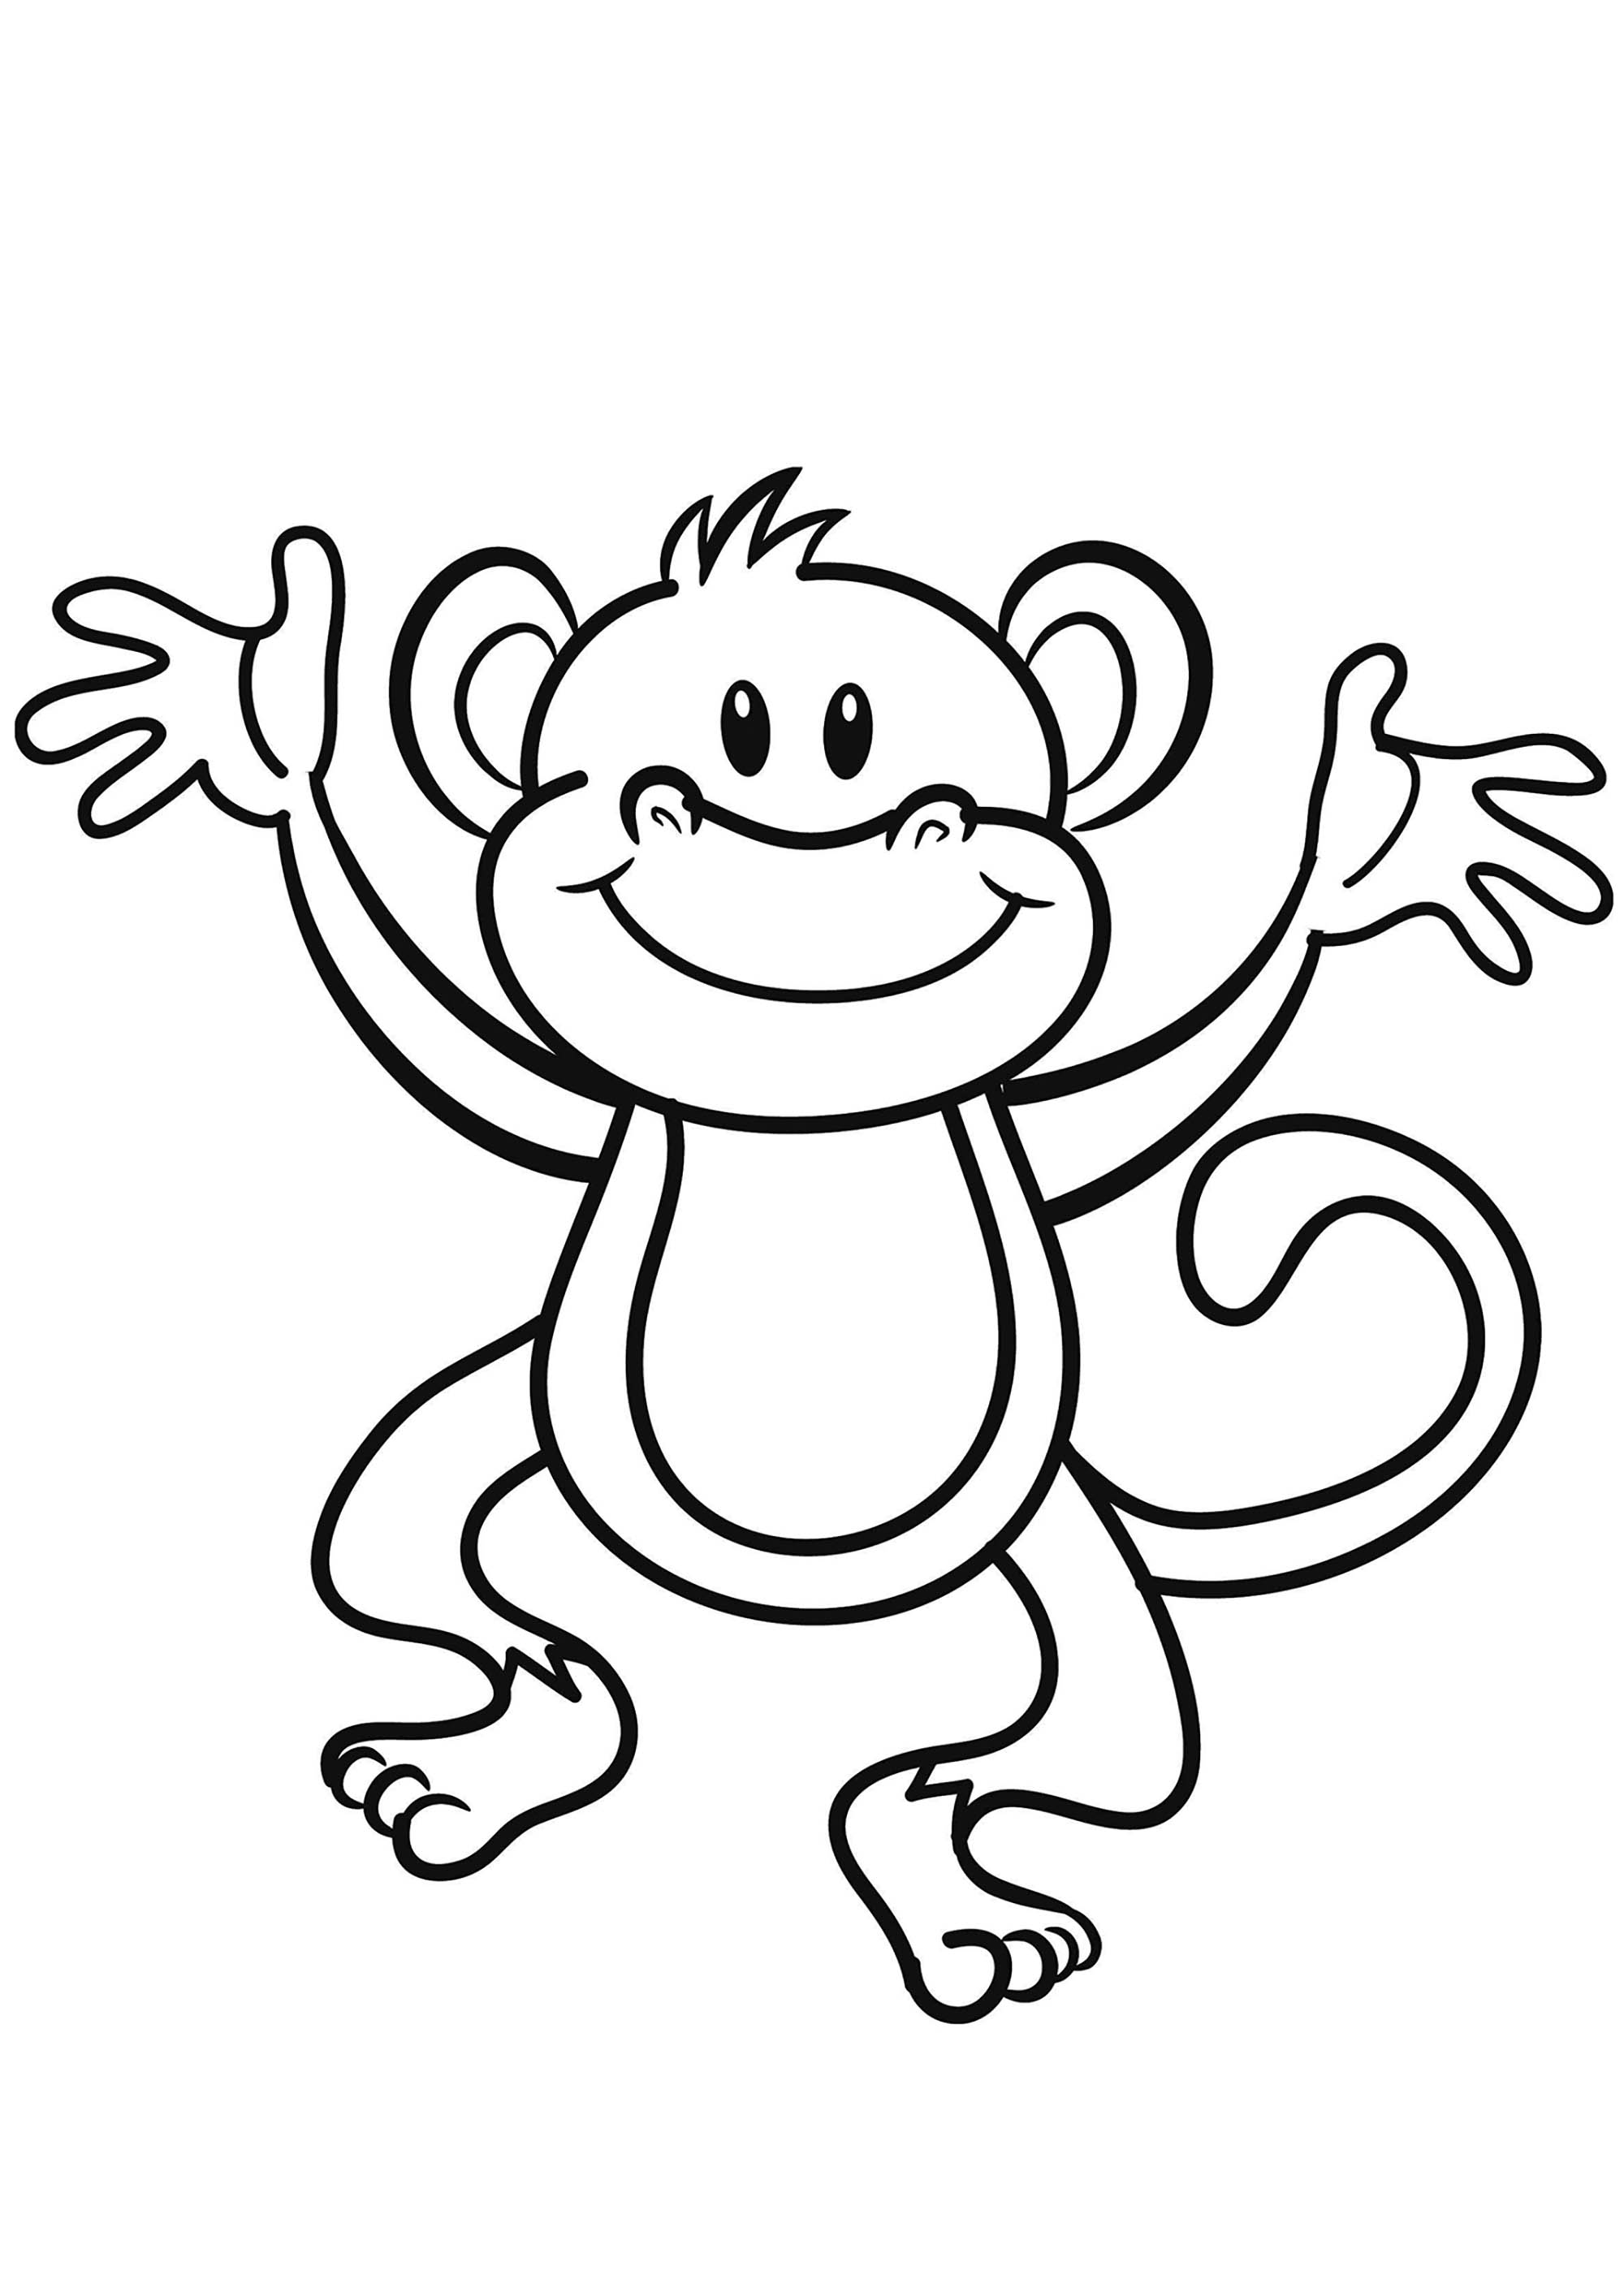 Dessin de singe gratuit à télécharger et colorier ...